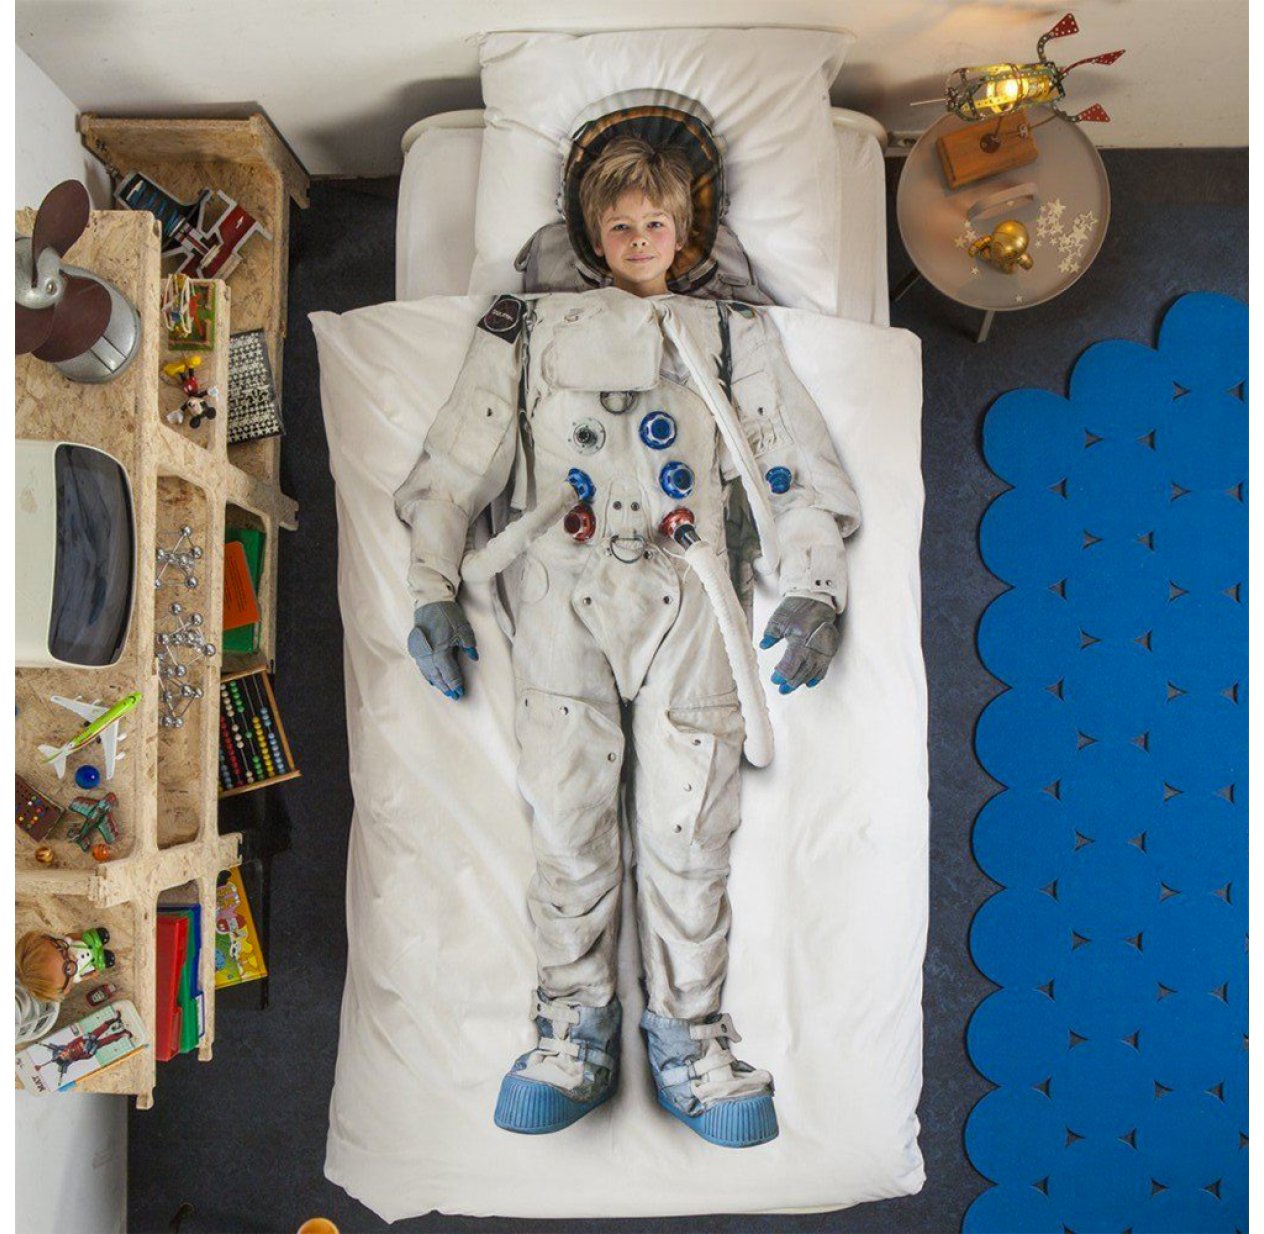 Casque d'astronaute enfant. Livraison 24h